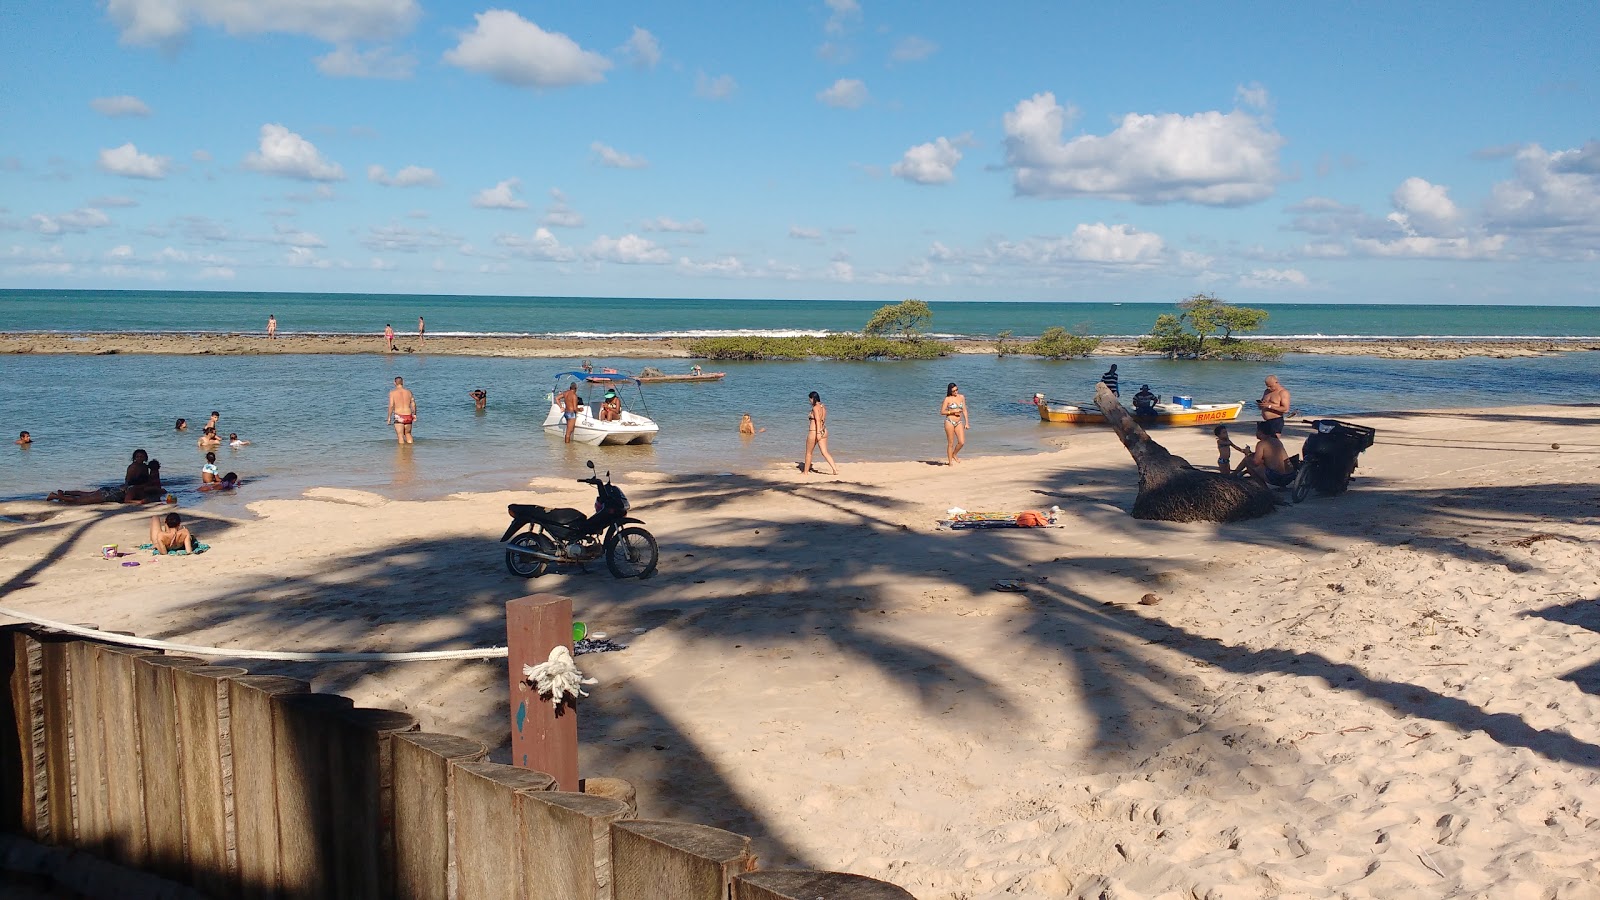 卡内罗斯海滩的照片 带有碧绿色纯水表面